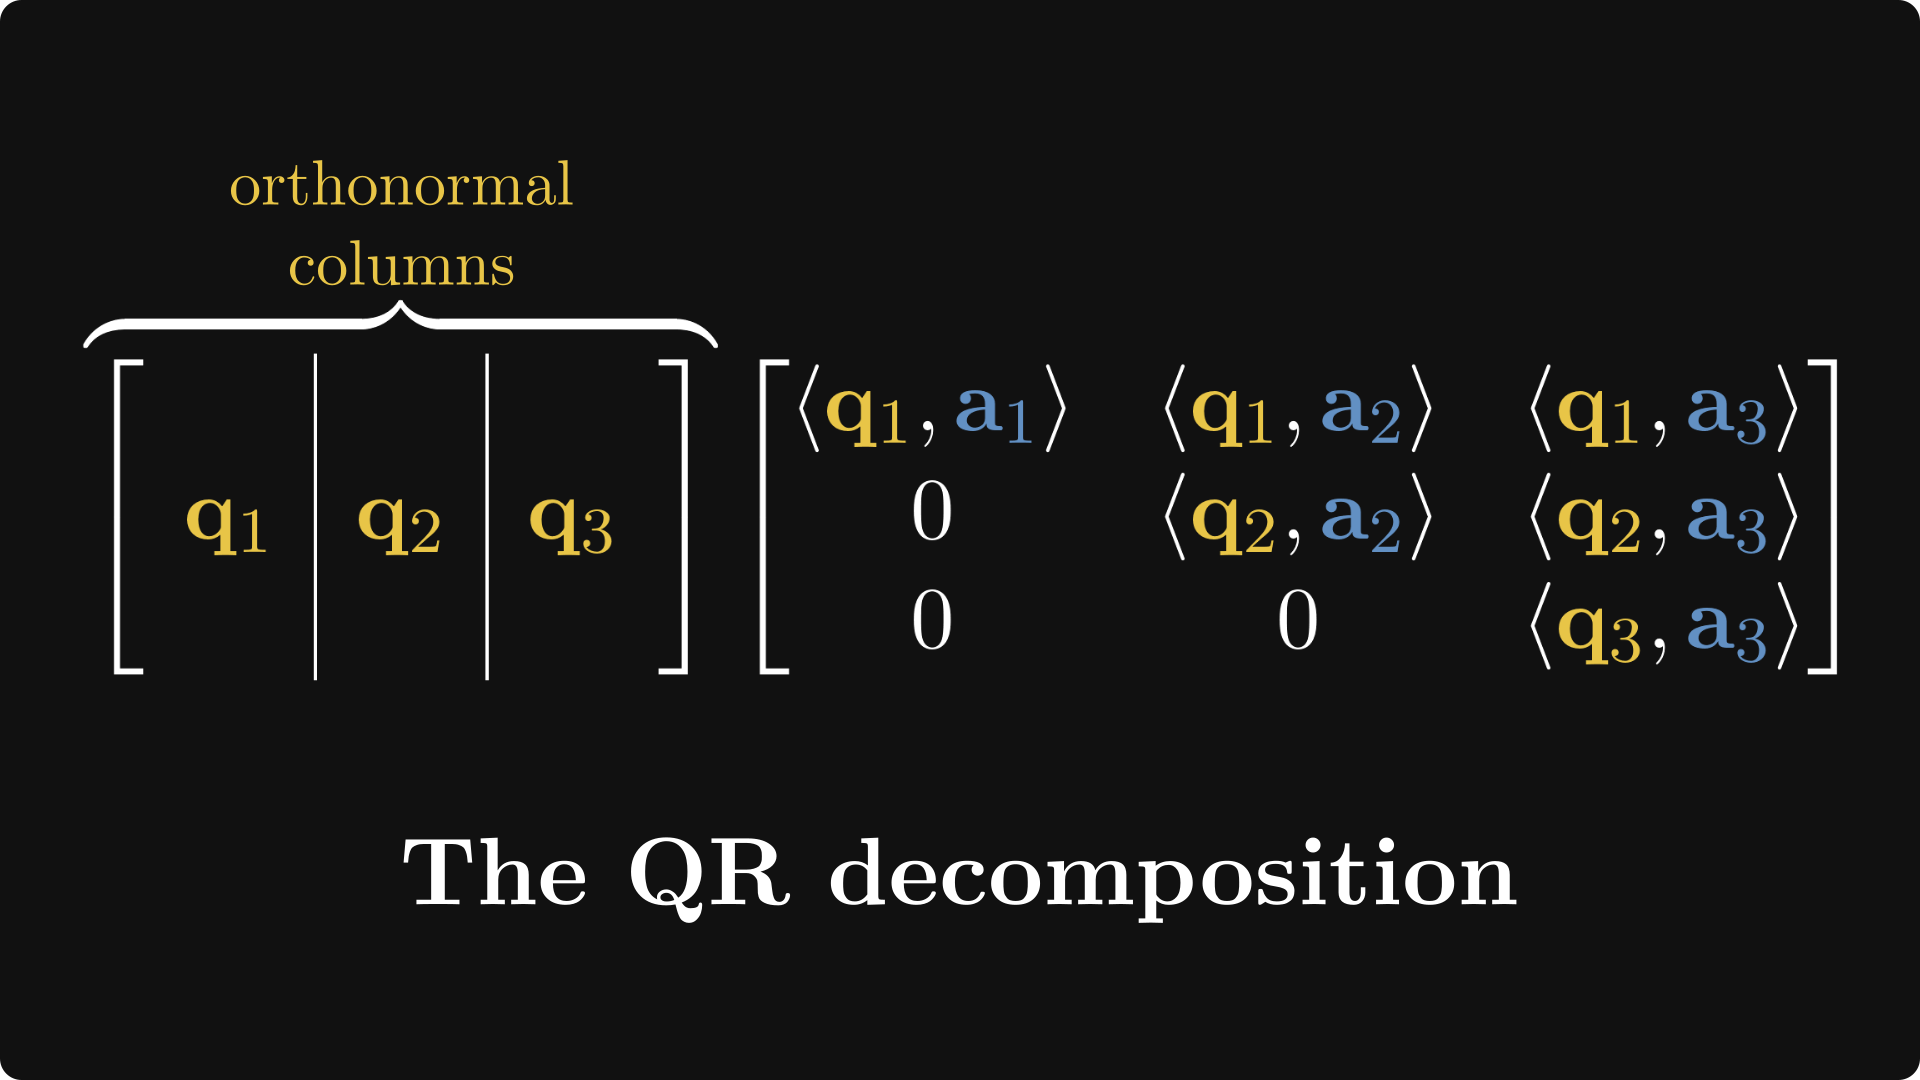 The QR decomposition